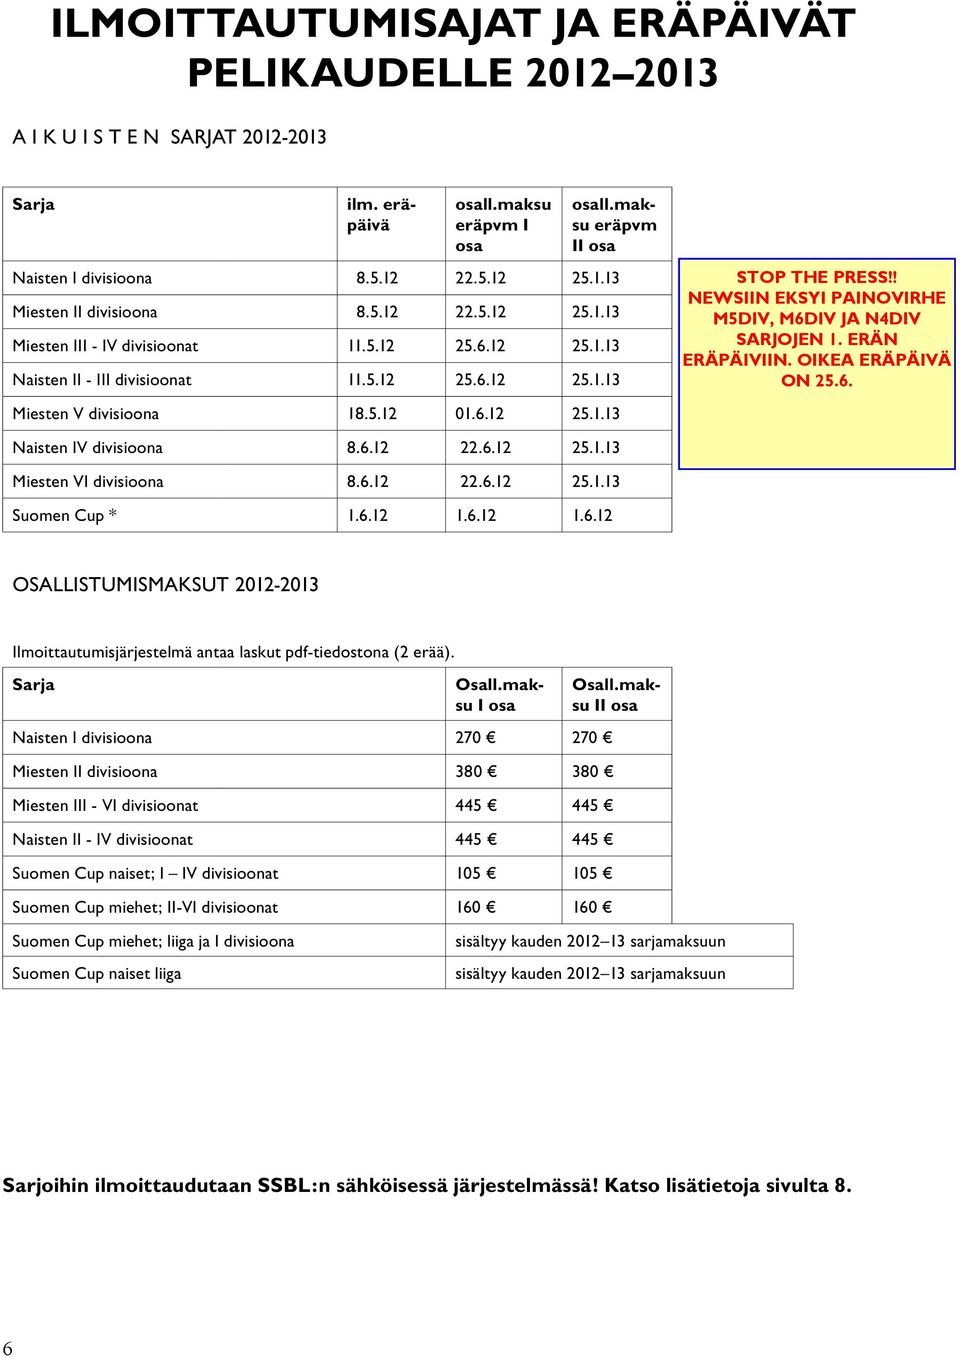 6.12 22.6.12 25.1.13 Miesten VI divisioona 8.6.12 22.6.12 25.1.13 Suomen Cup * 1.6.12 1.6.12 1.6.12 OSALLISTUMISMAKSUT 2012-2013 Ilmoittautumisjärjestelmä antaa laskut pdf-tiedostona (2 erää).